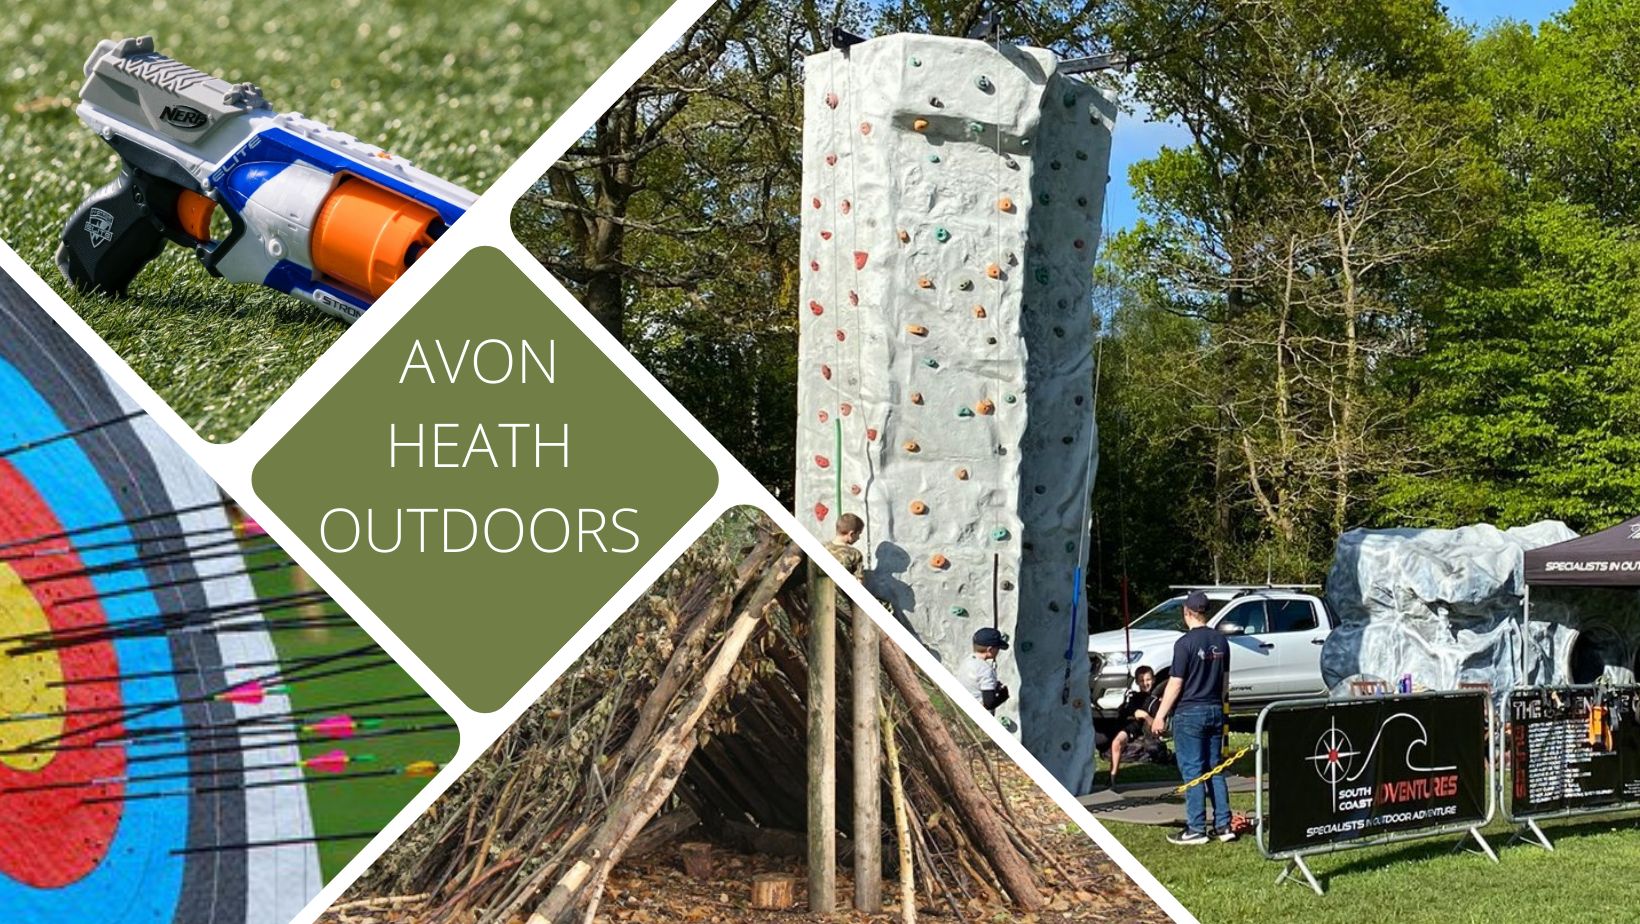 Avon Heath Outdoors image